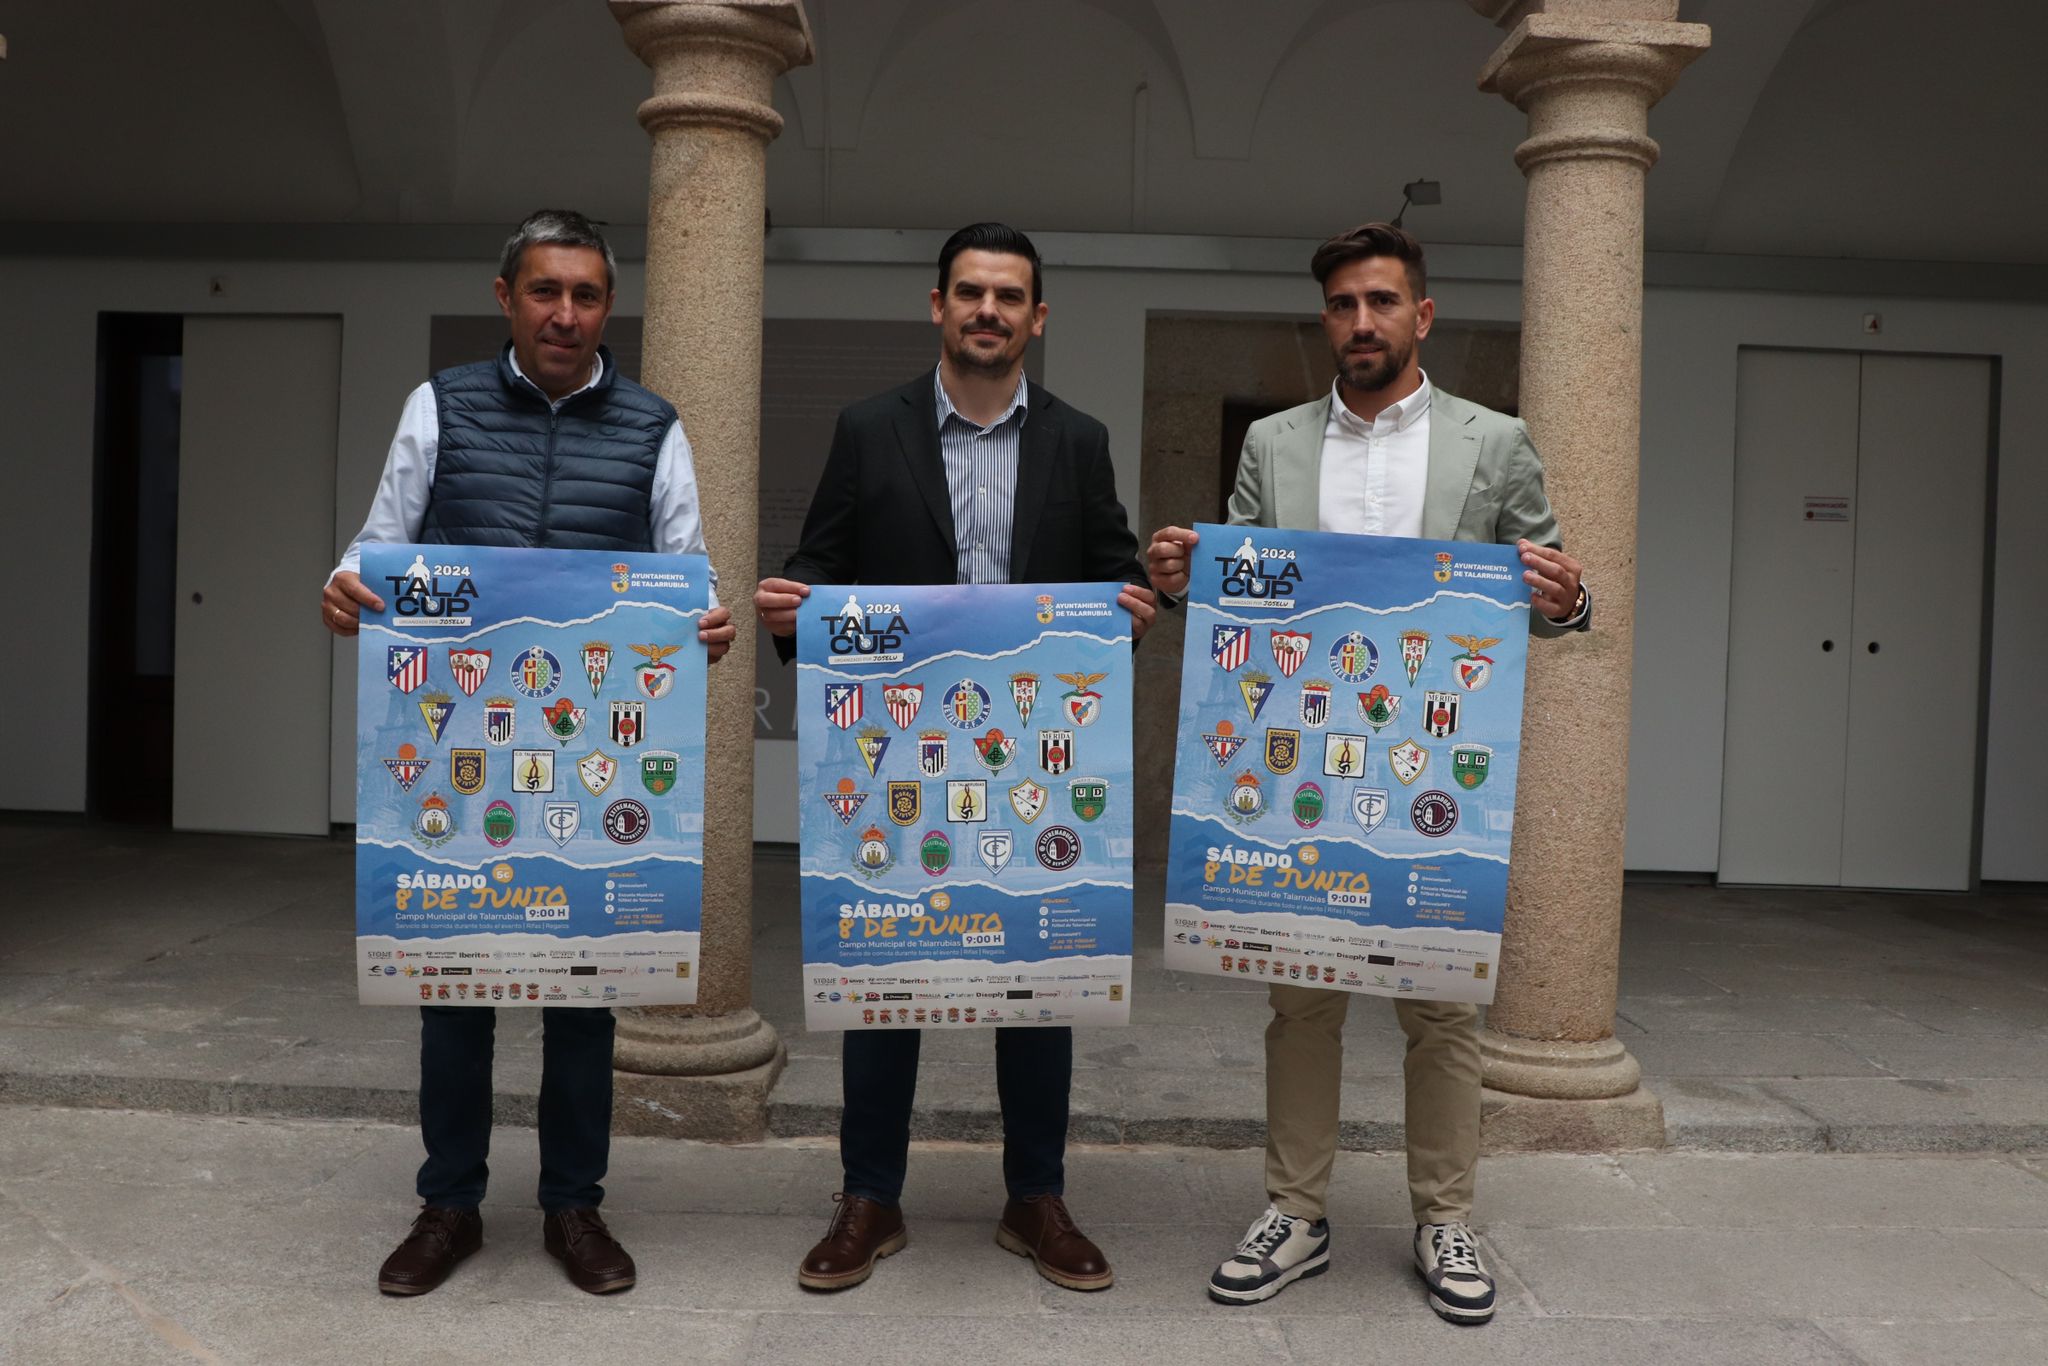 Image 6 of article Unos 800 menores participarán en Extremadura en la segunda edición del torneo de fútbol base Tala Cup